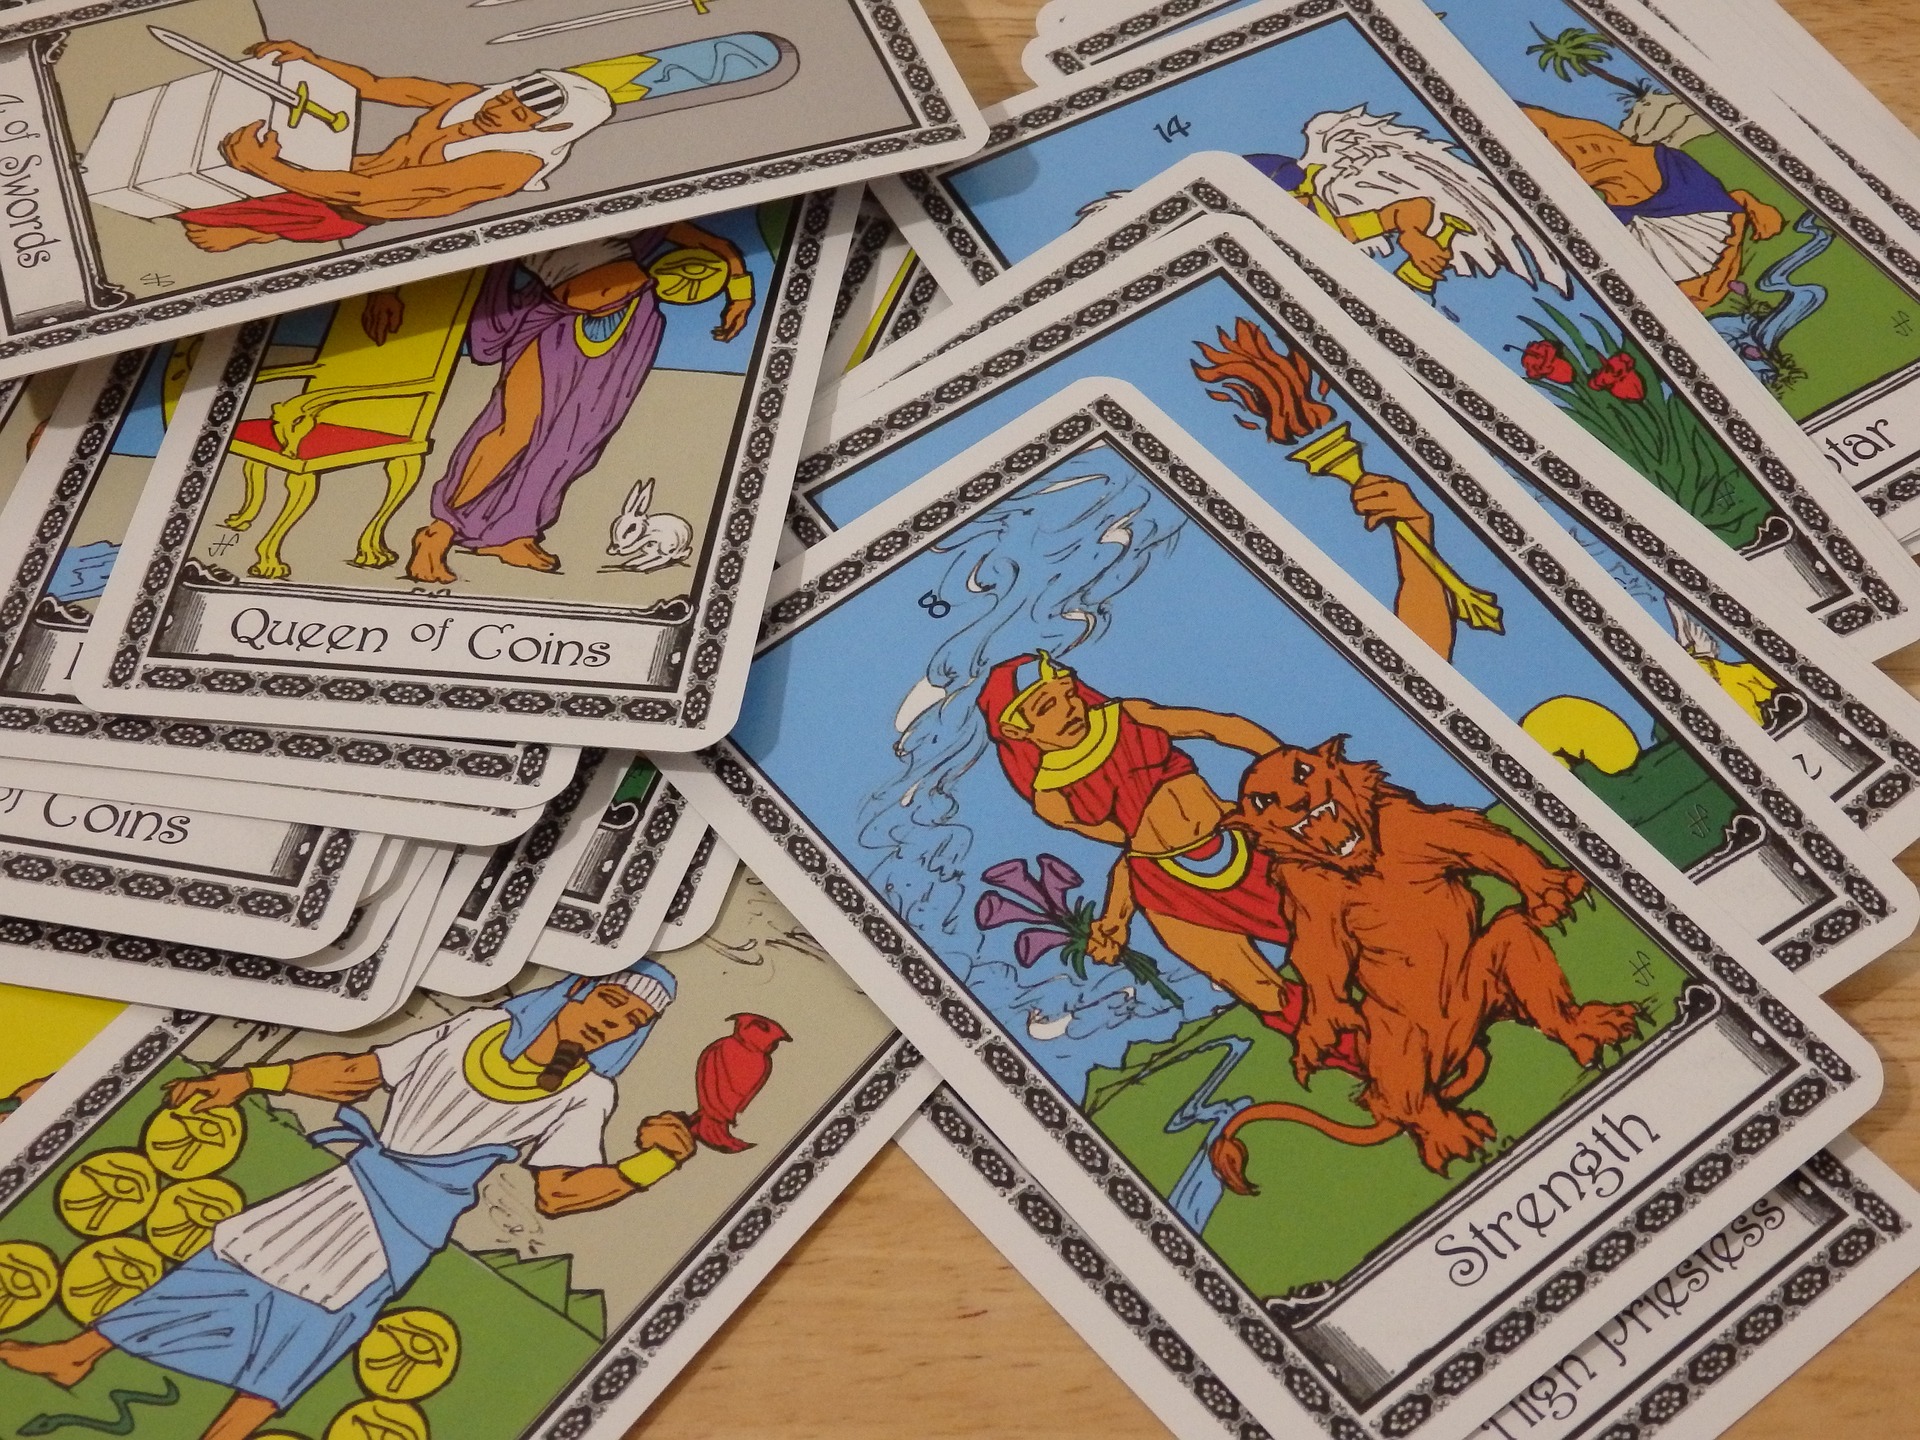 Cómo funciona el Tarot y para qué se utiliza? ¿Qué son las cartas del tarot?